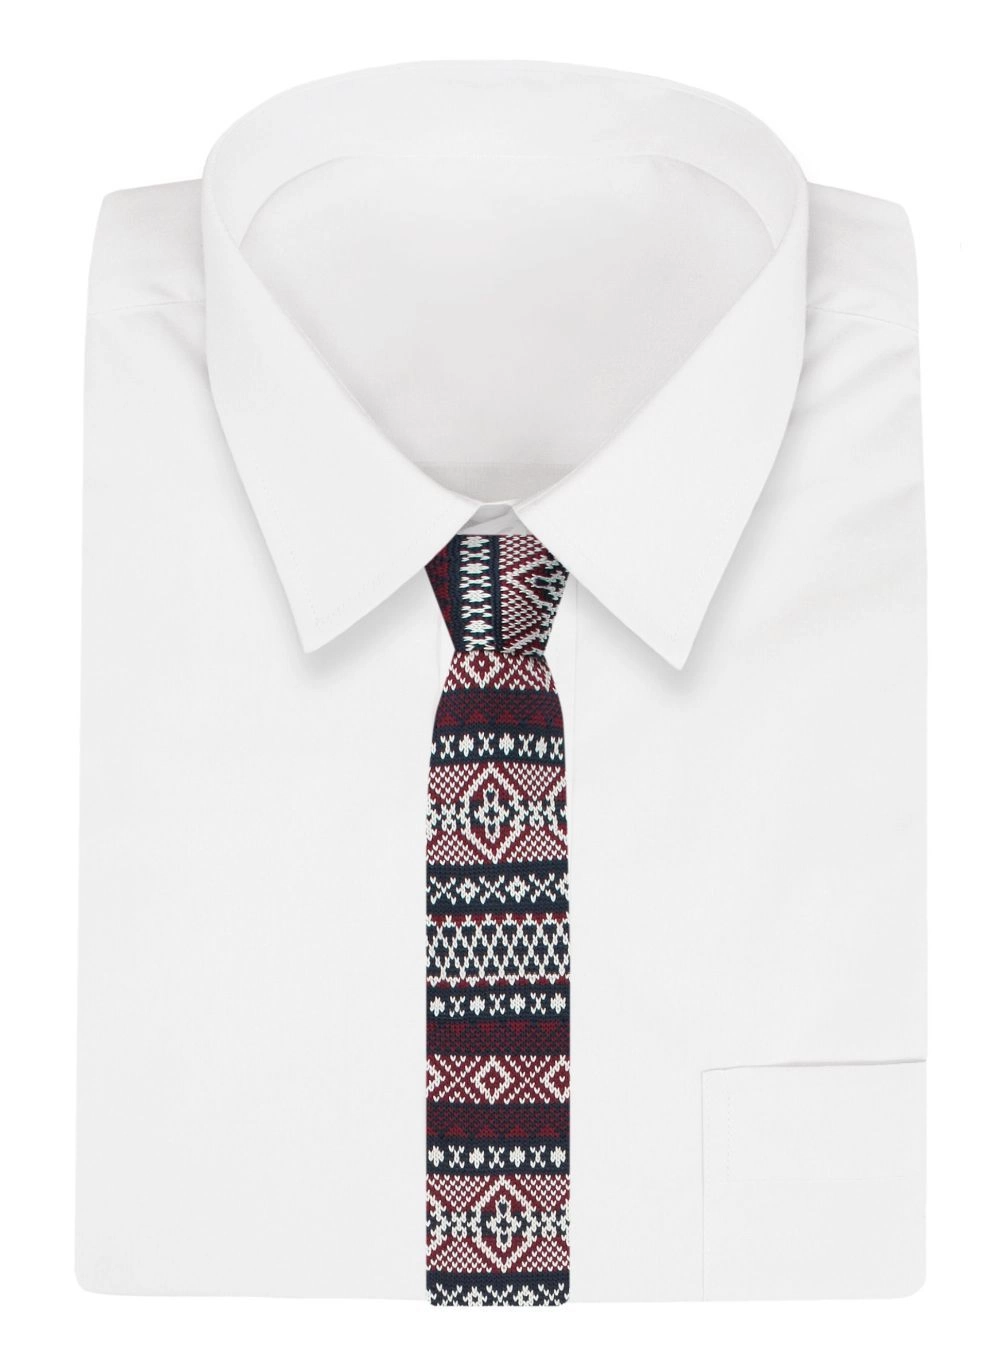 Krawat Dziergany Świąteczny Granatowo-Bordowy Męski Knit Wzór Norweski- 5,5 cm ALTIES